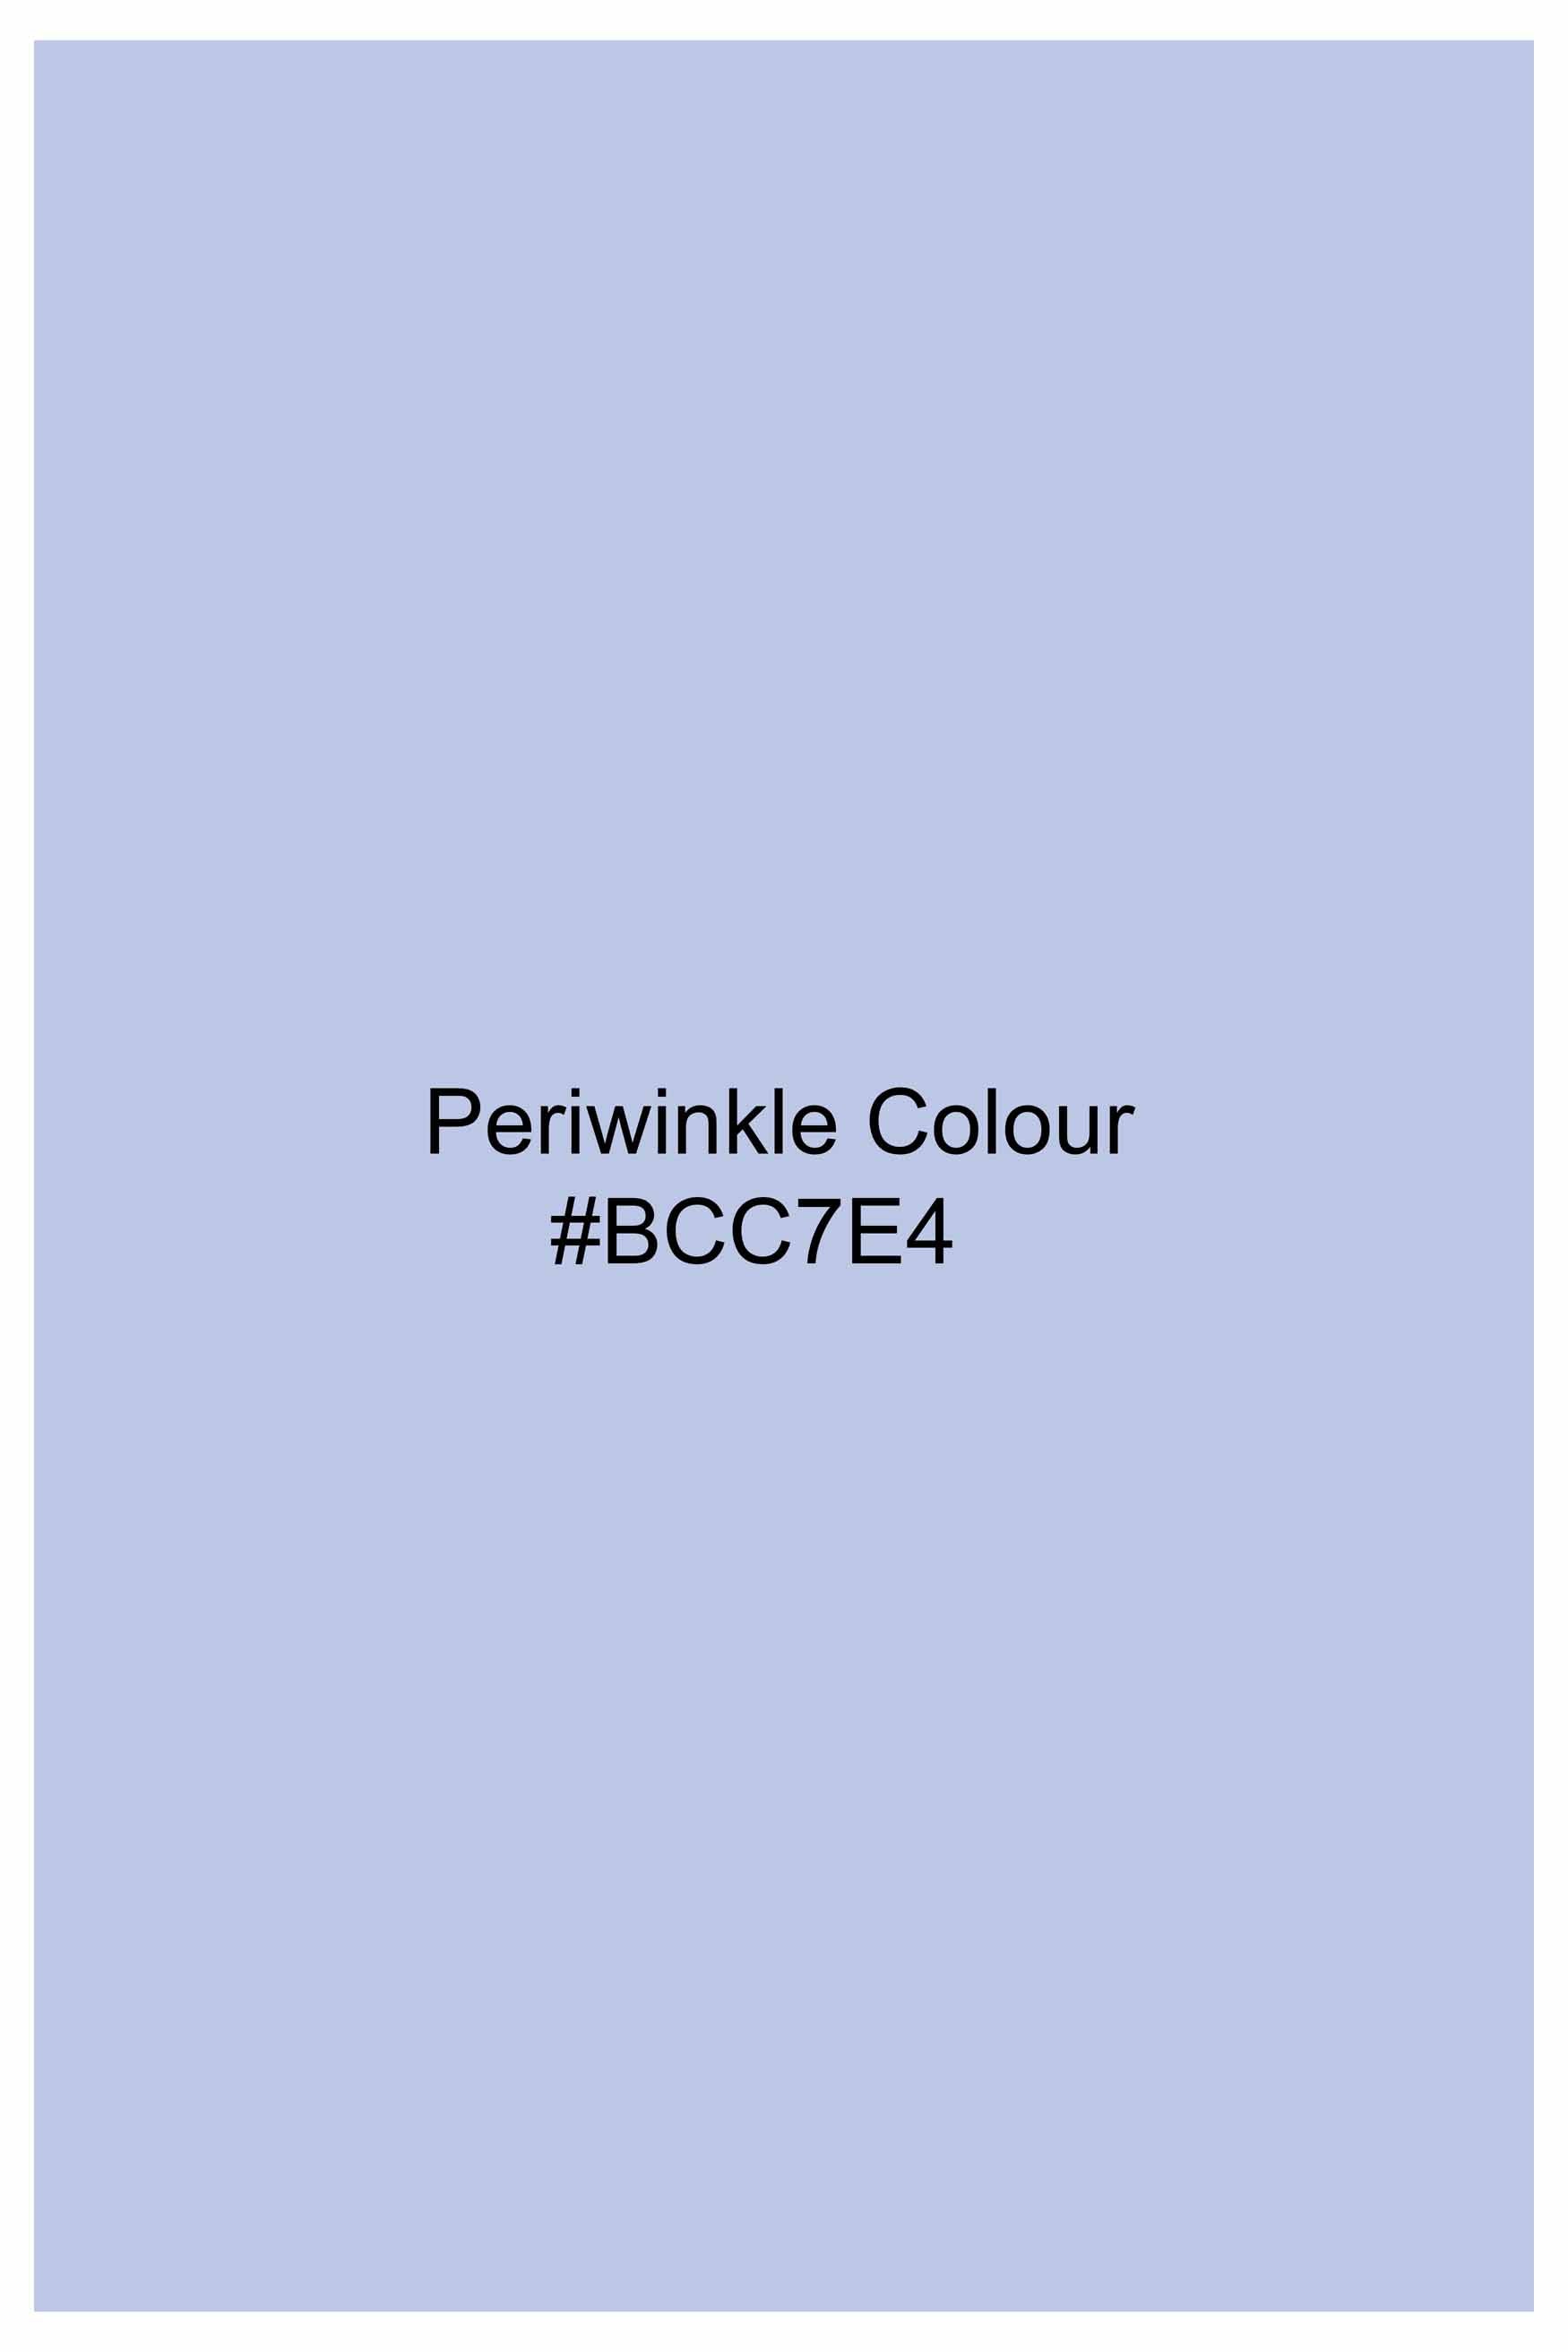 Periwinkle Blue Subtle Sheen Super Soft Premium Cotton Shirt